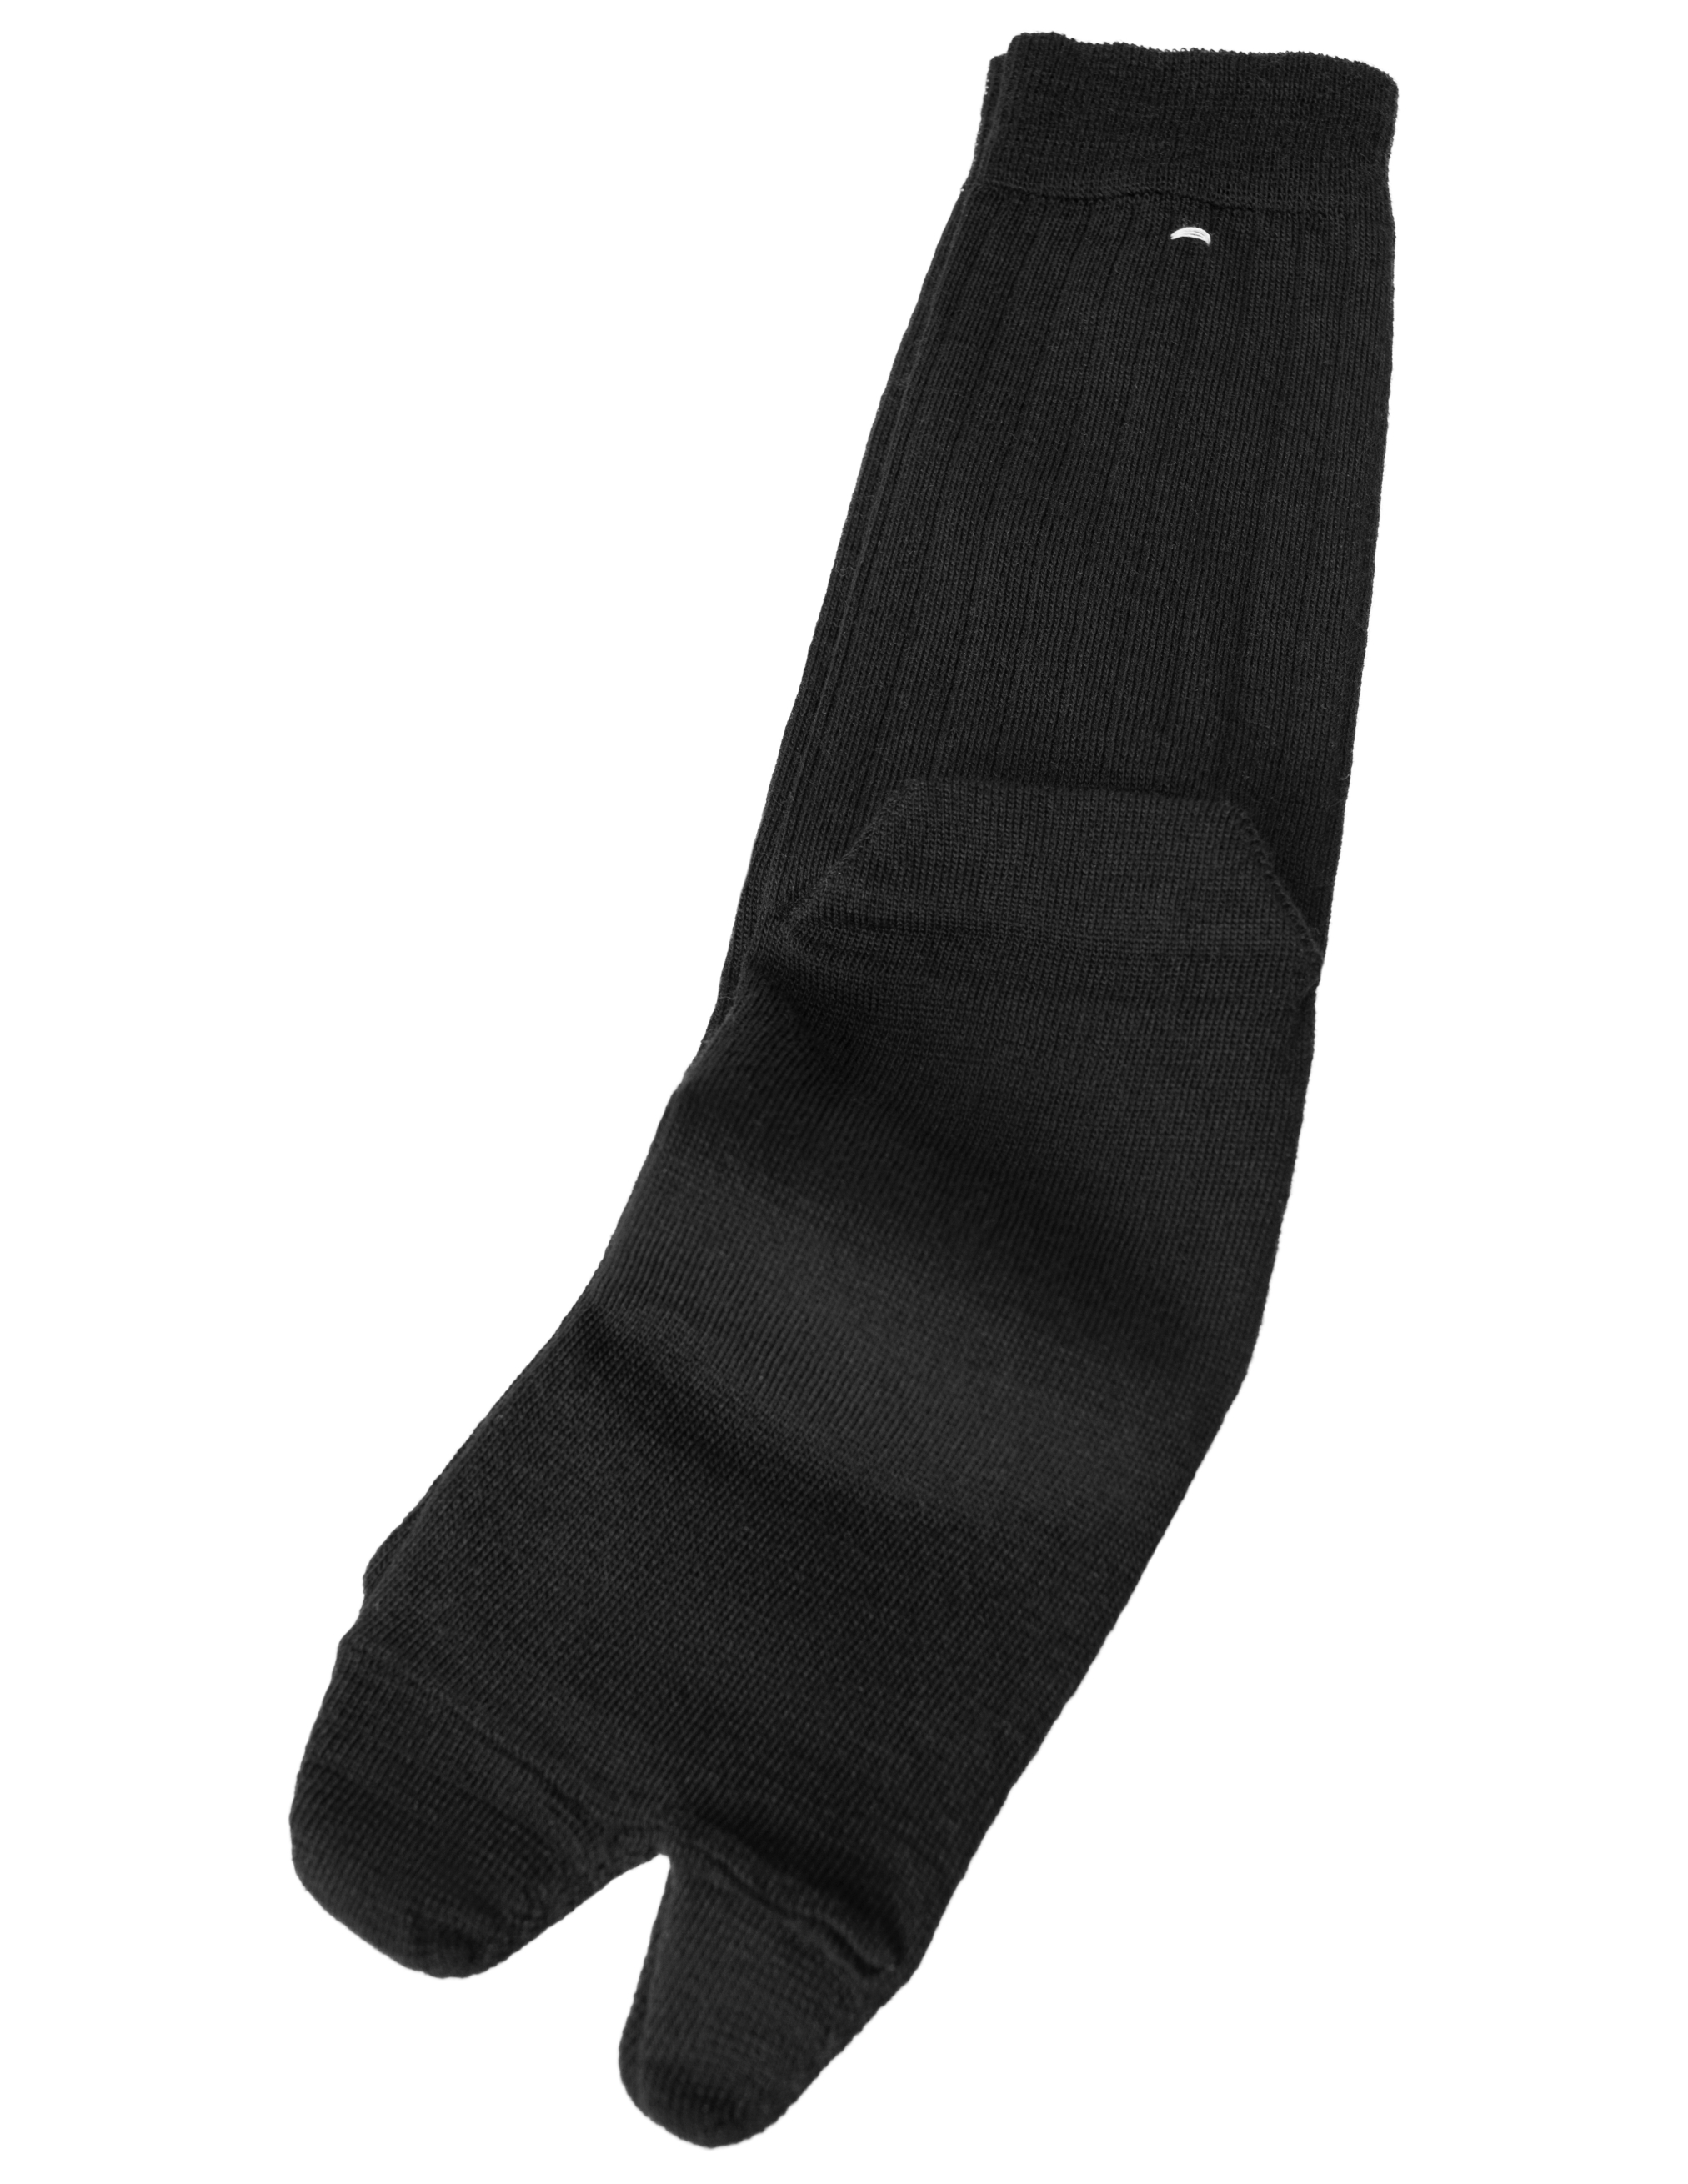 Черные носки Tabi Maison Margiela SI0TL0001/S17867/900, размер S;M SI0TL0001/S17867/900 - фото 1